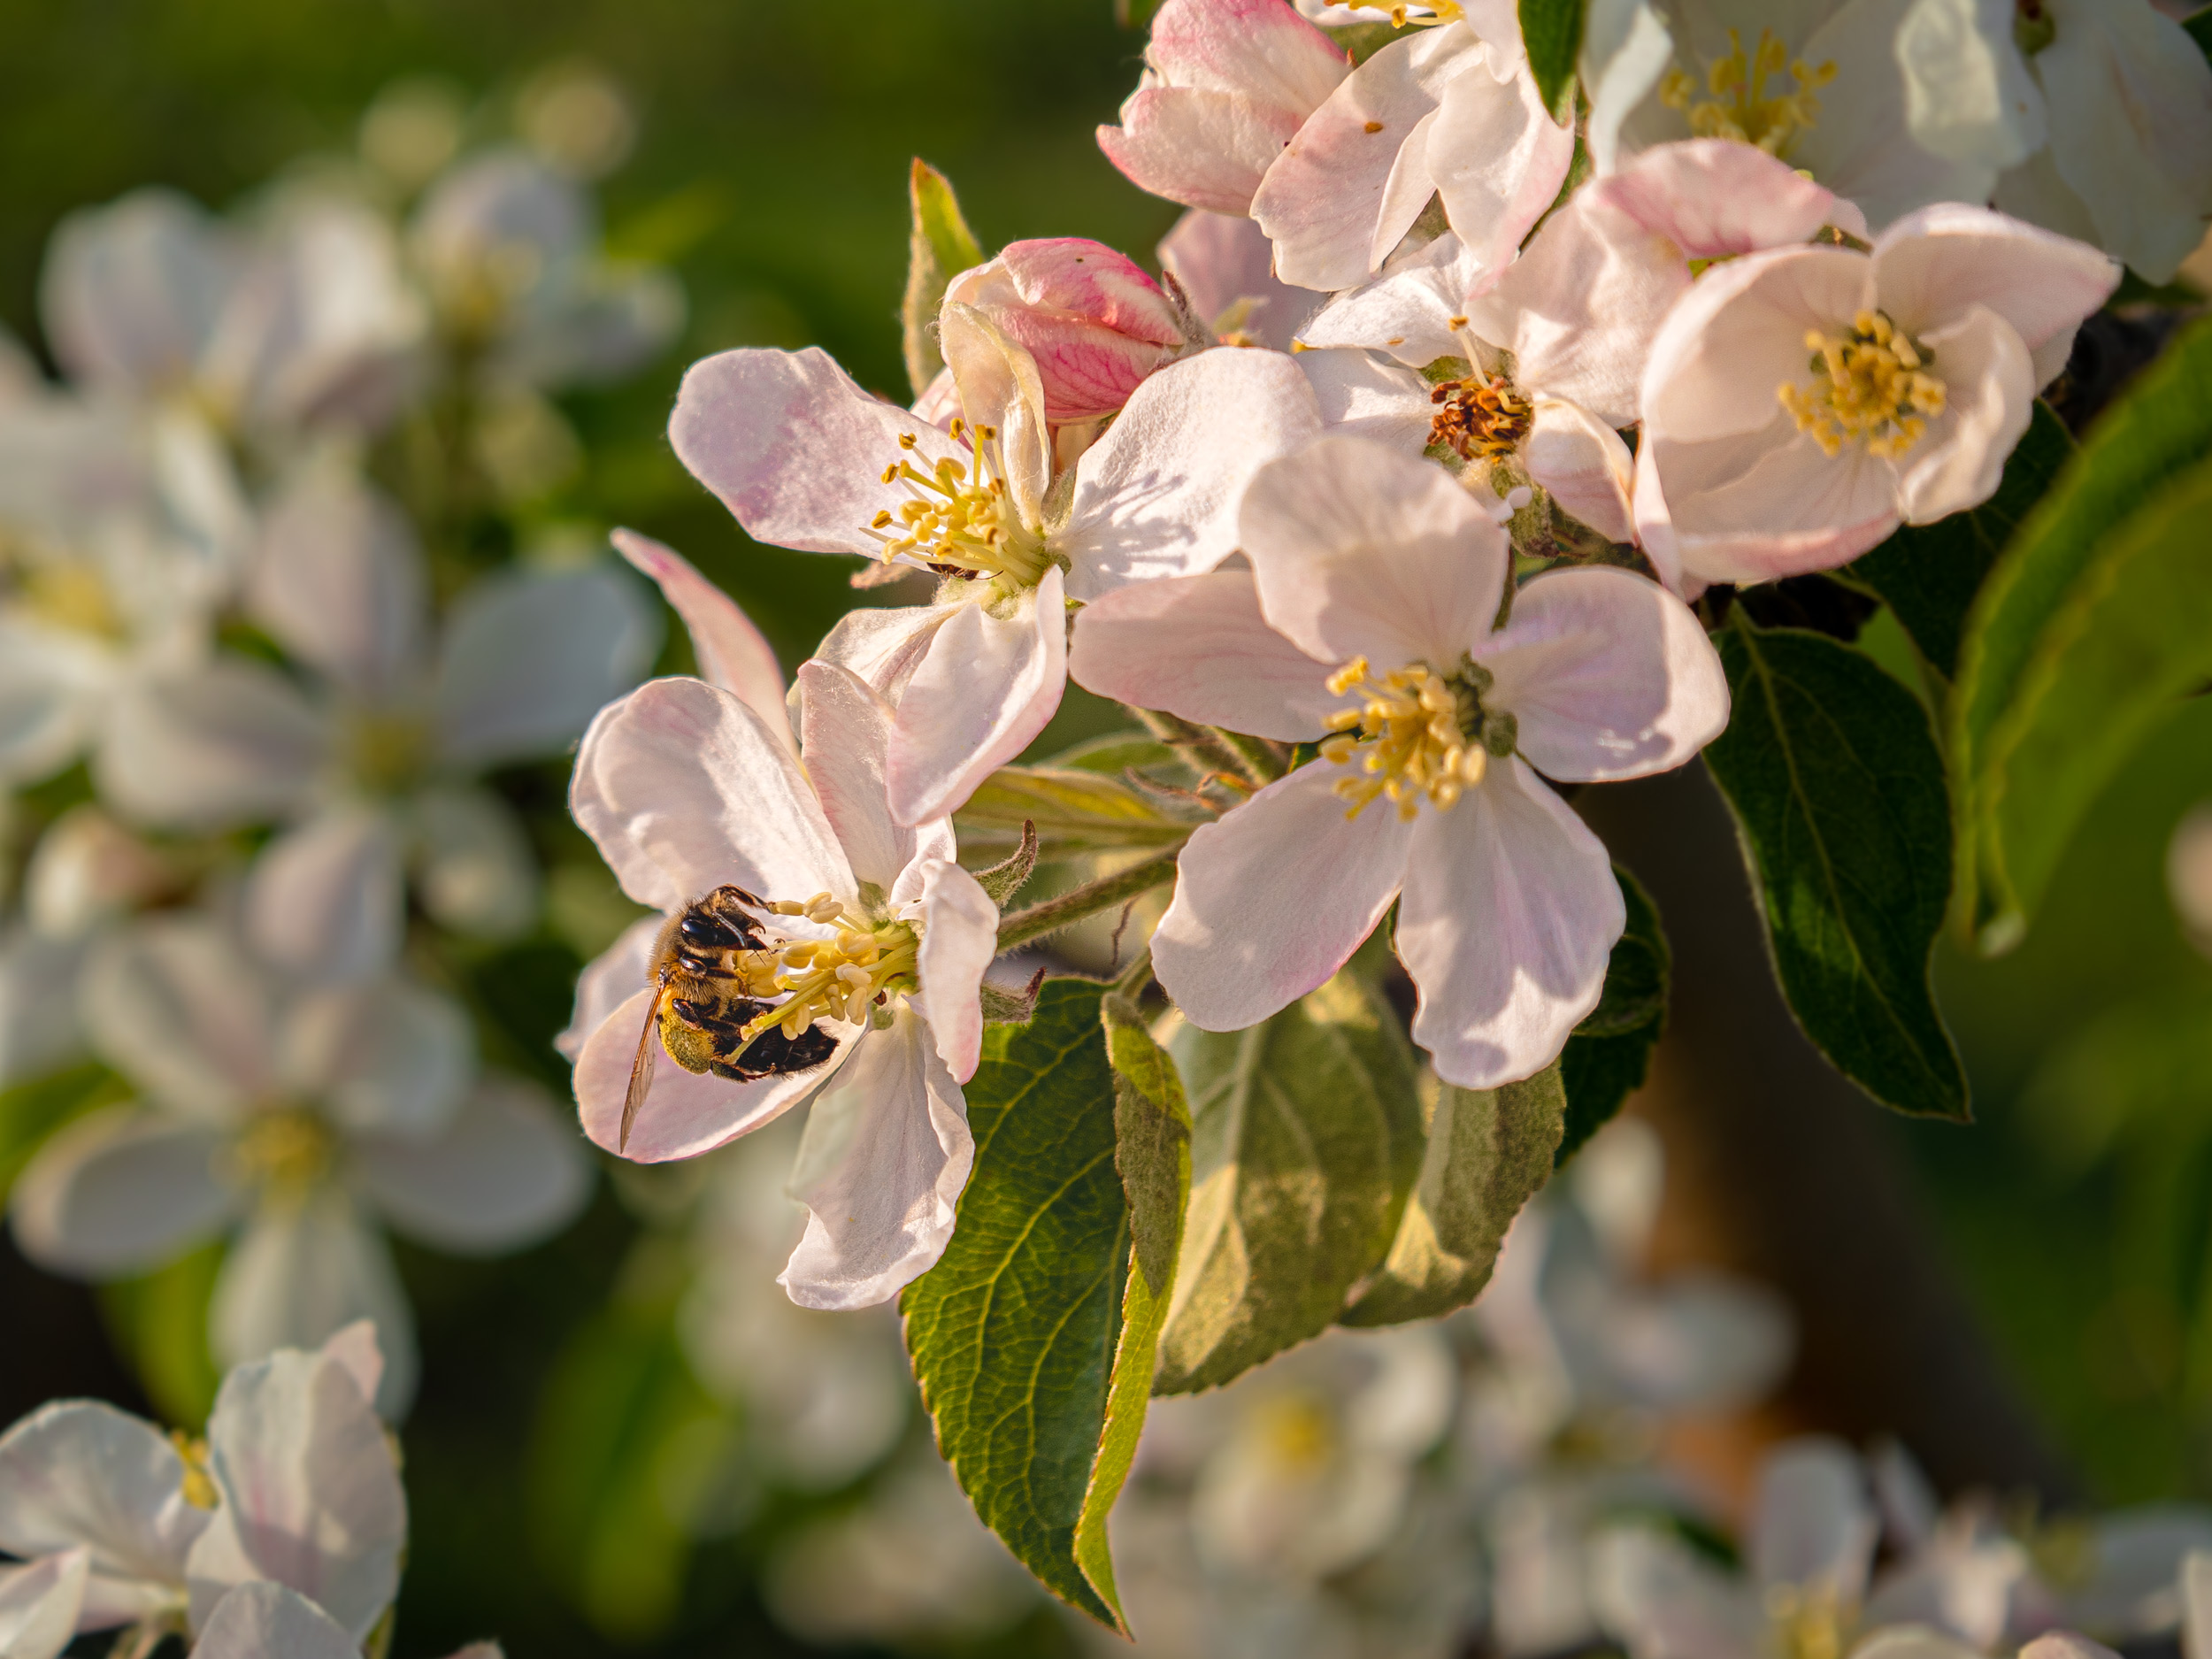 Пчела за работой, пчела собирает пыльцу, цветки яблони, Сильва Татьяна